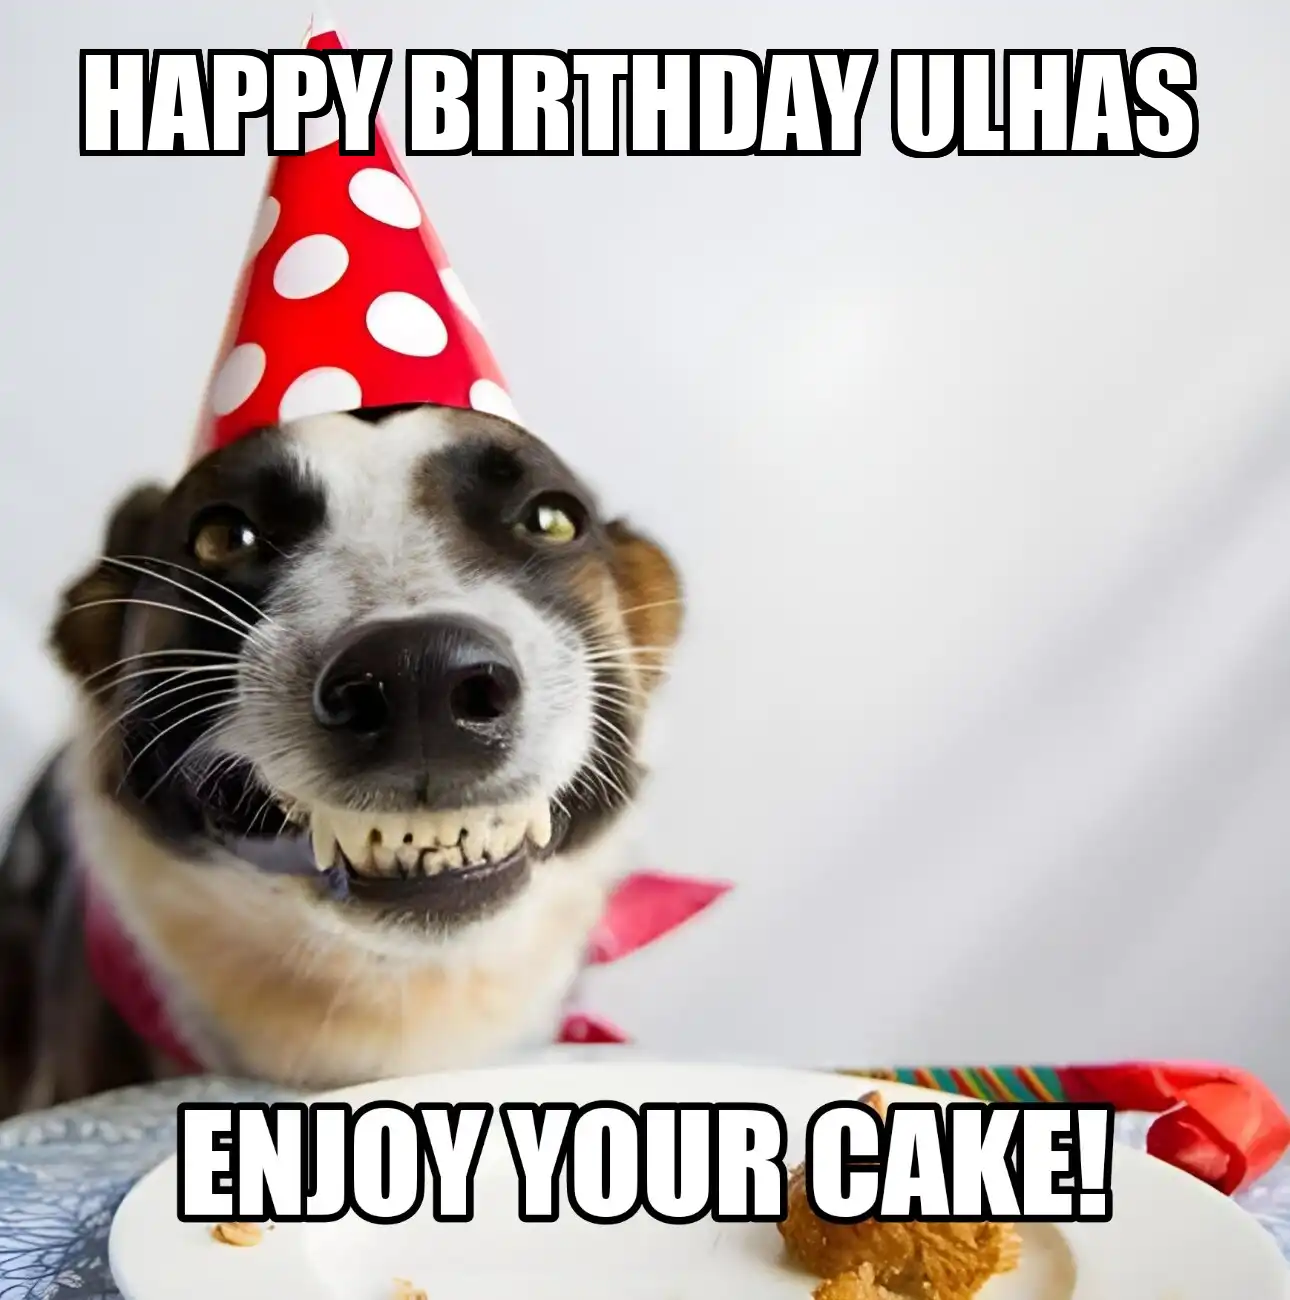 Happy Birthday Ulhas Enjoy Your Cake Dog Meme